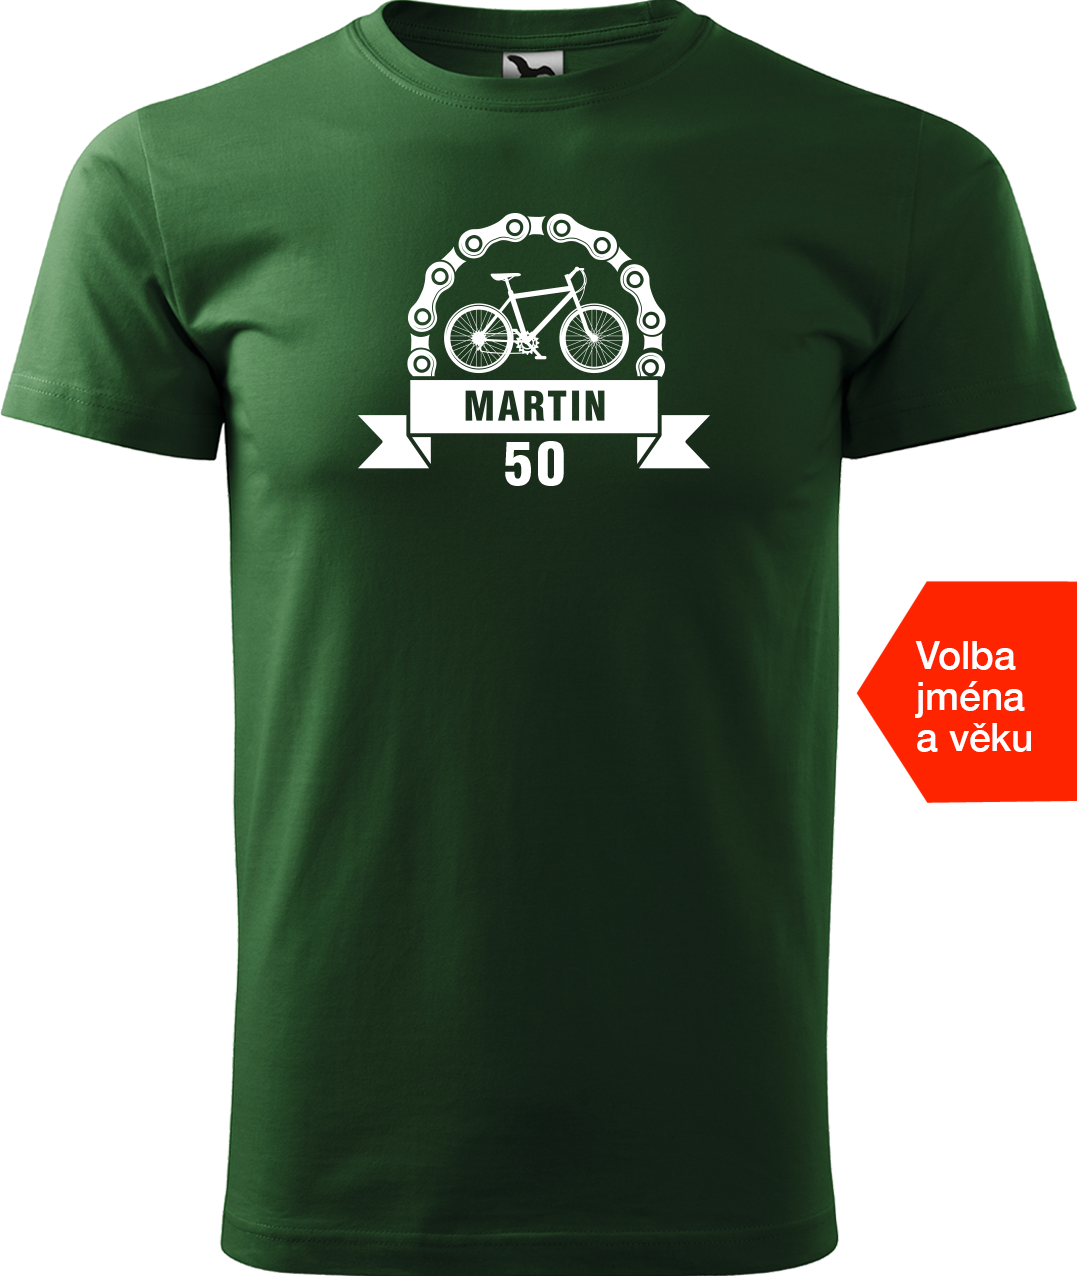 Pánské tričko pro cyklistu se jménem a věkem - Blahopřání Velikost: XL, Barva: Lahvově zelená (06)